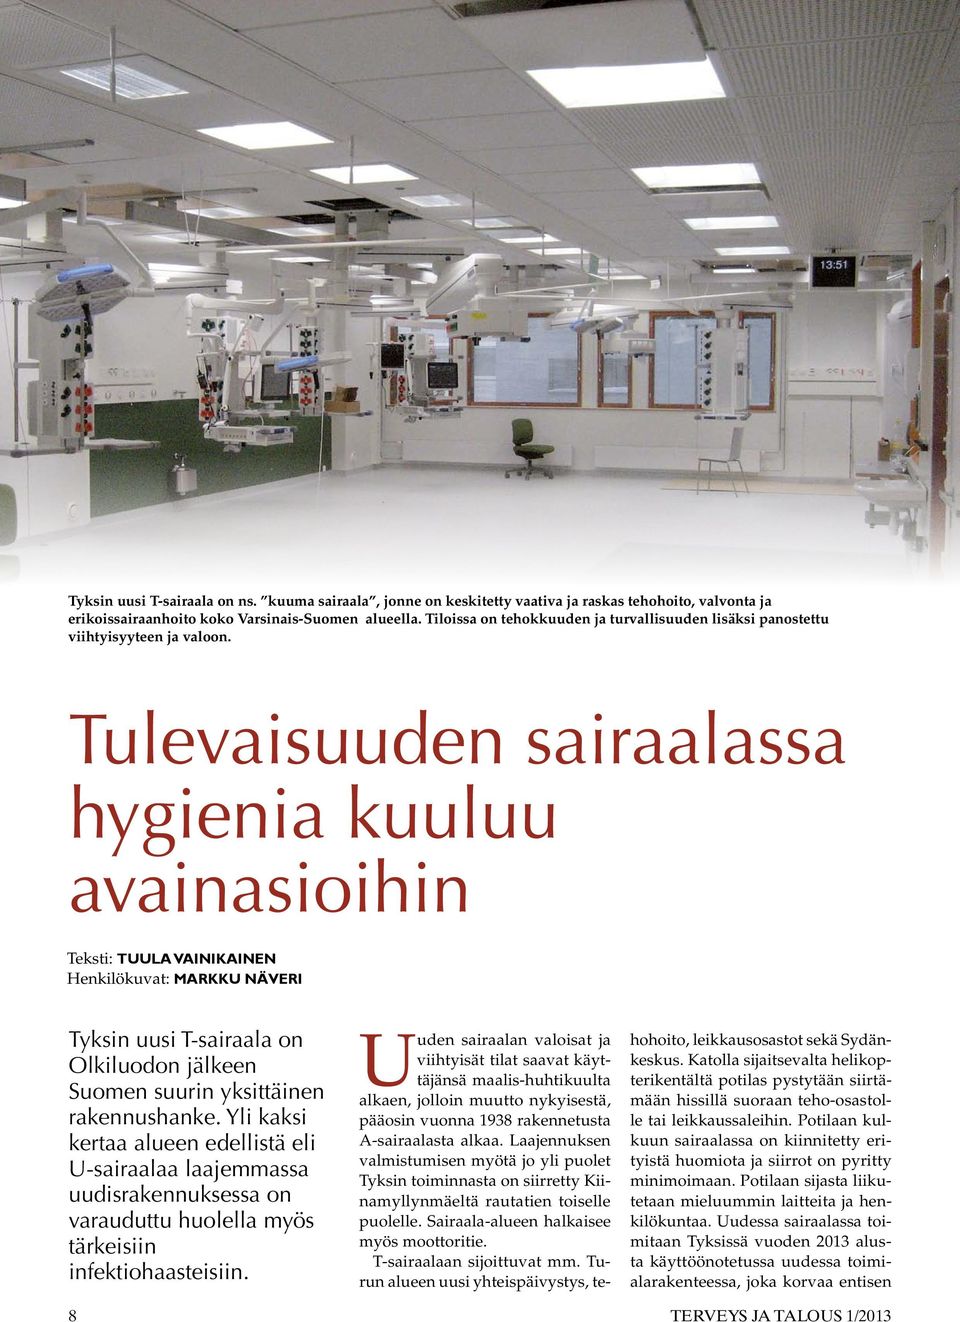 Tulevaisuuden sairaalassa hygienia kuuluu avainasioihin Teksti: Tuula Vainikainen Henkilökuvat: Markku Näveri Tyksin uusi T-sairaala on Olkiluodon jälkeen Suomen suurin yksittäinen rakennushanke.